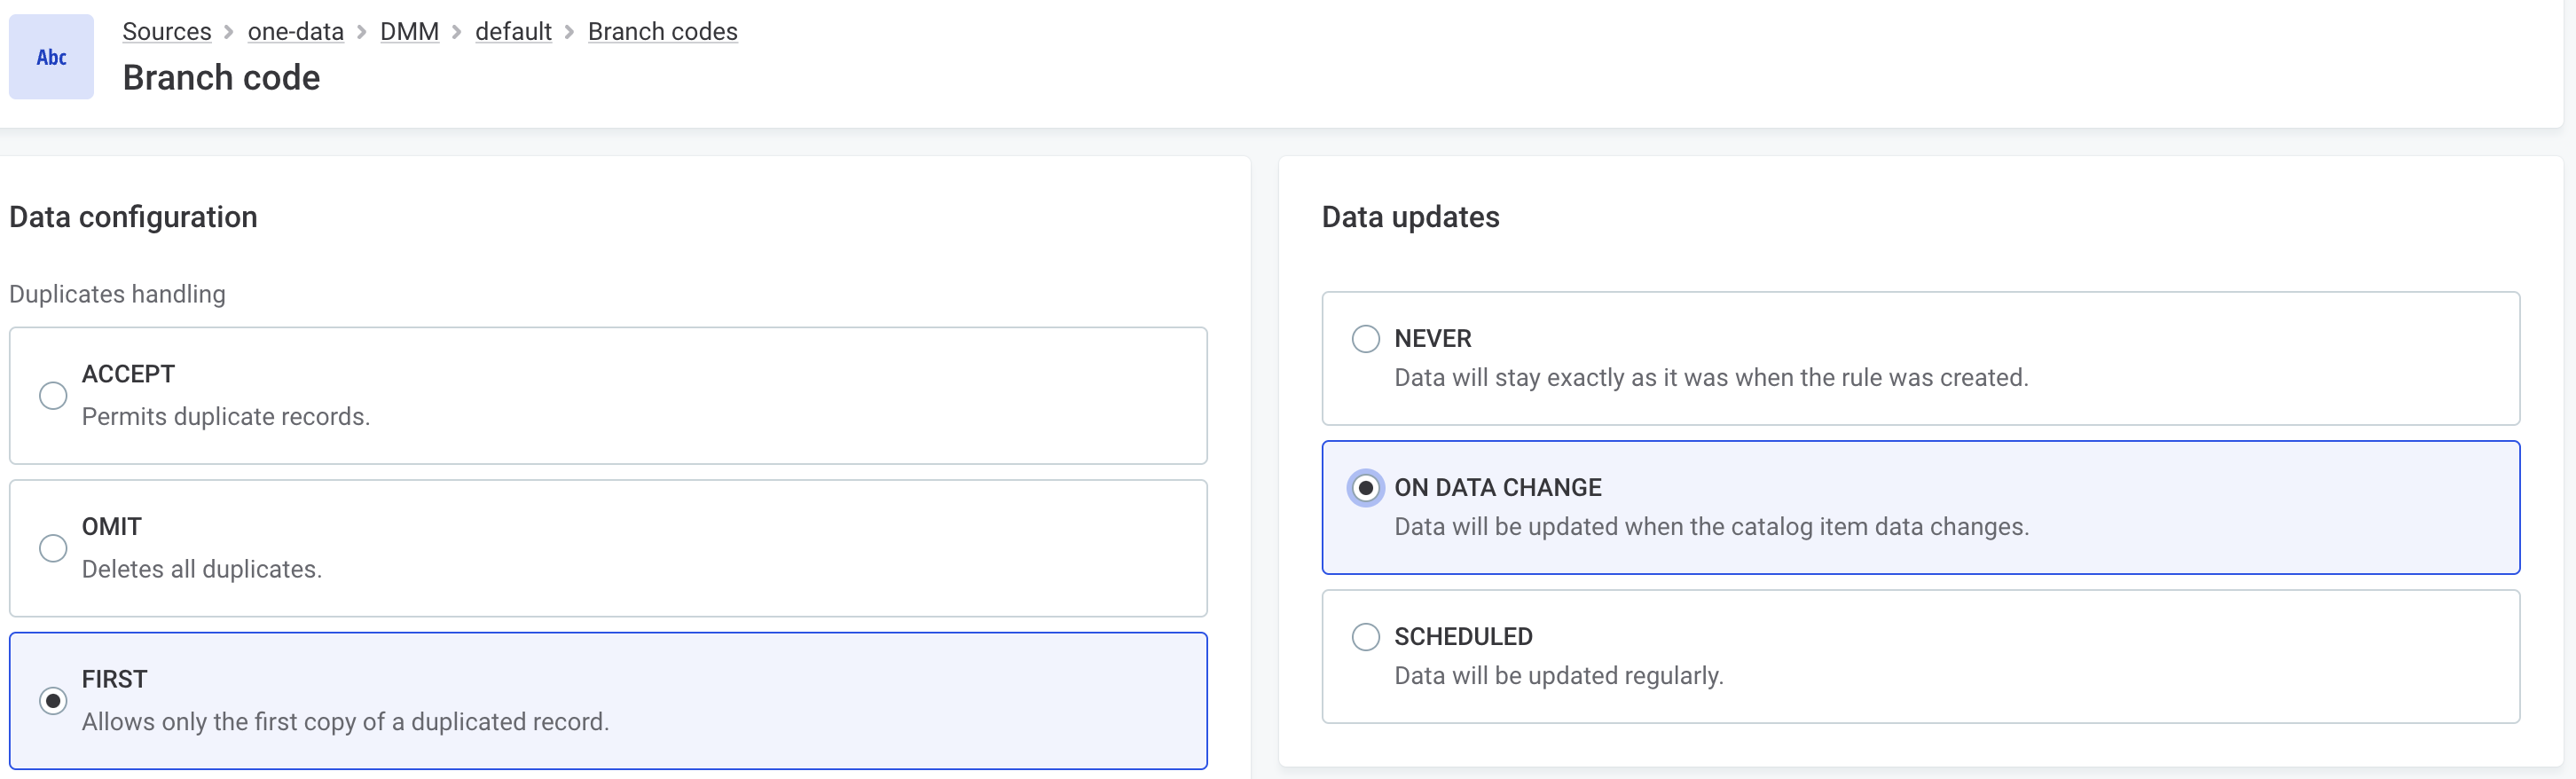 Configure data updates